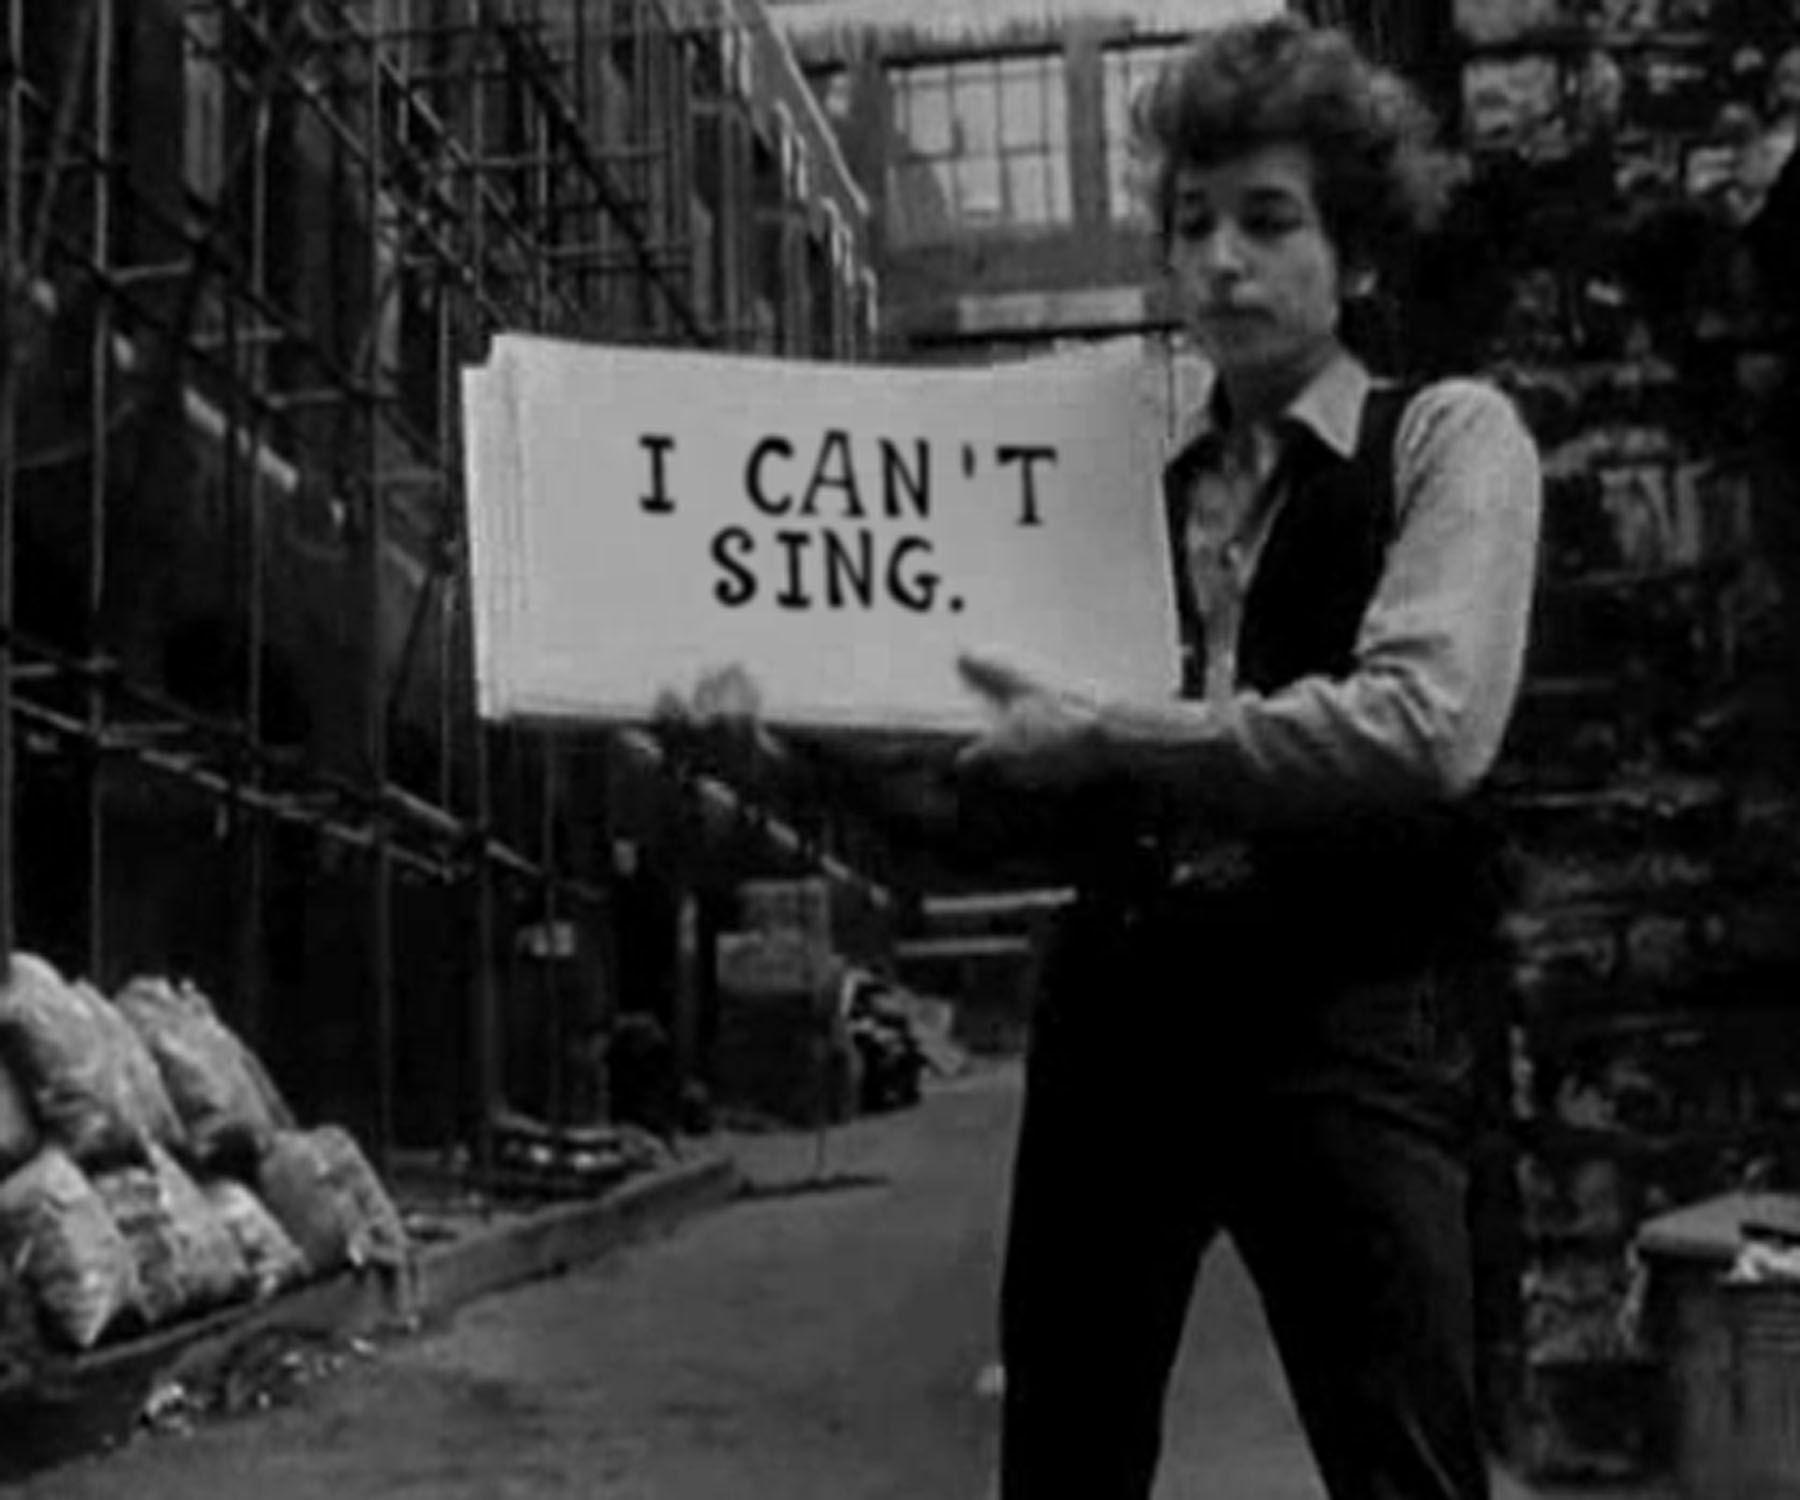 Bob Dylan Image